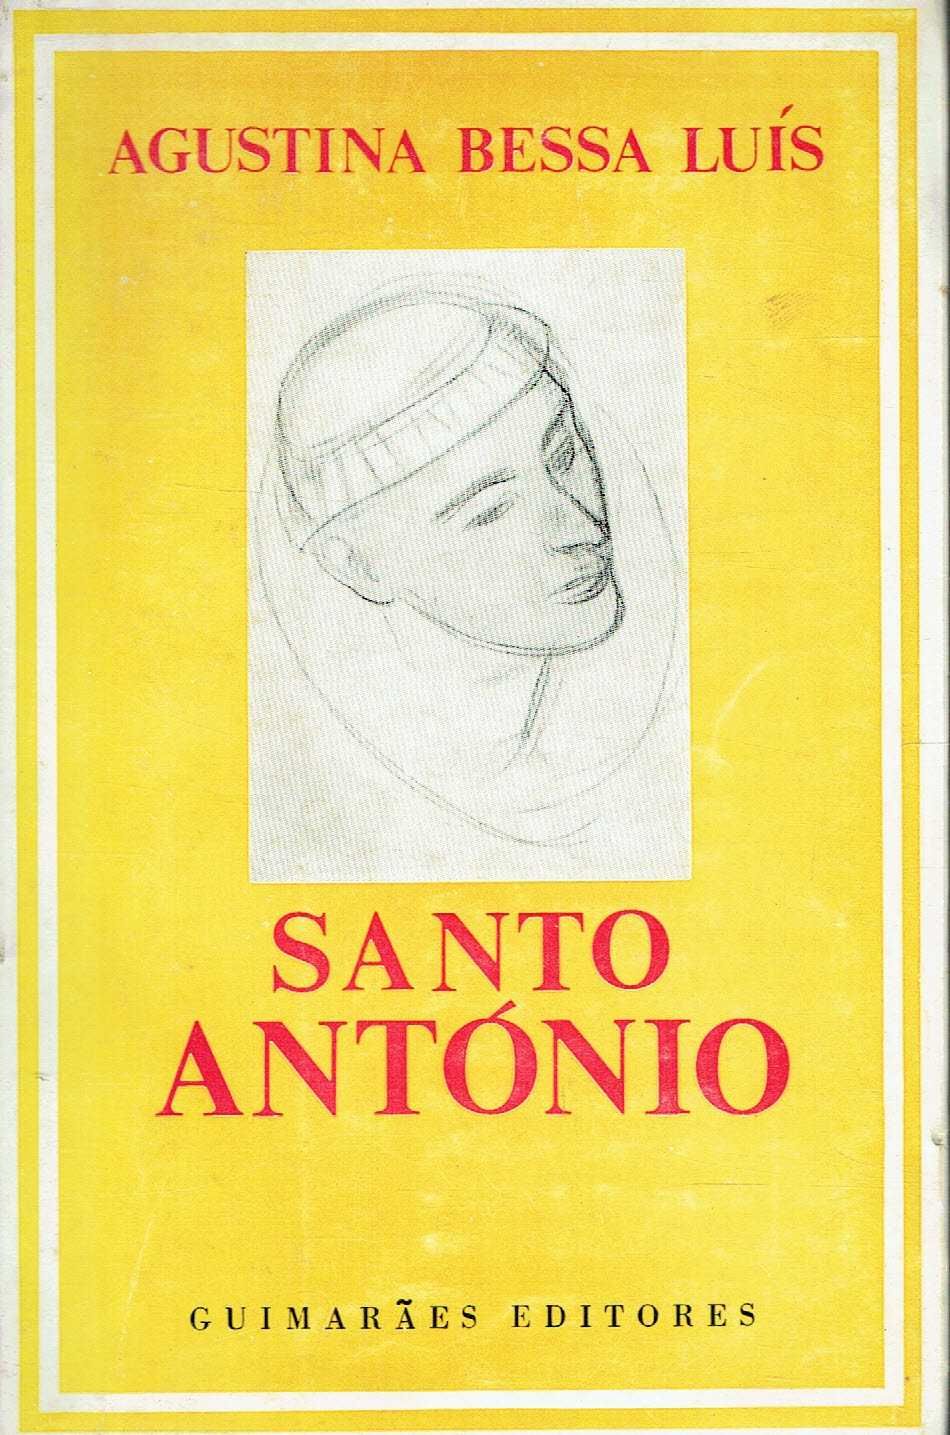 7391

Santo António, 
de Agustina Bessa-Luís